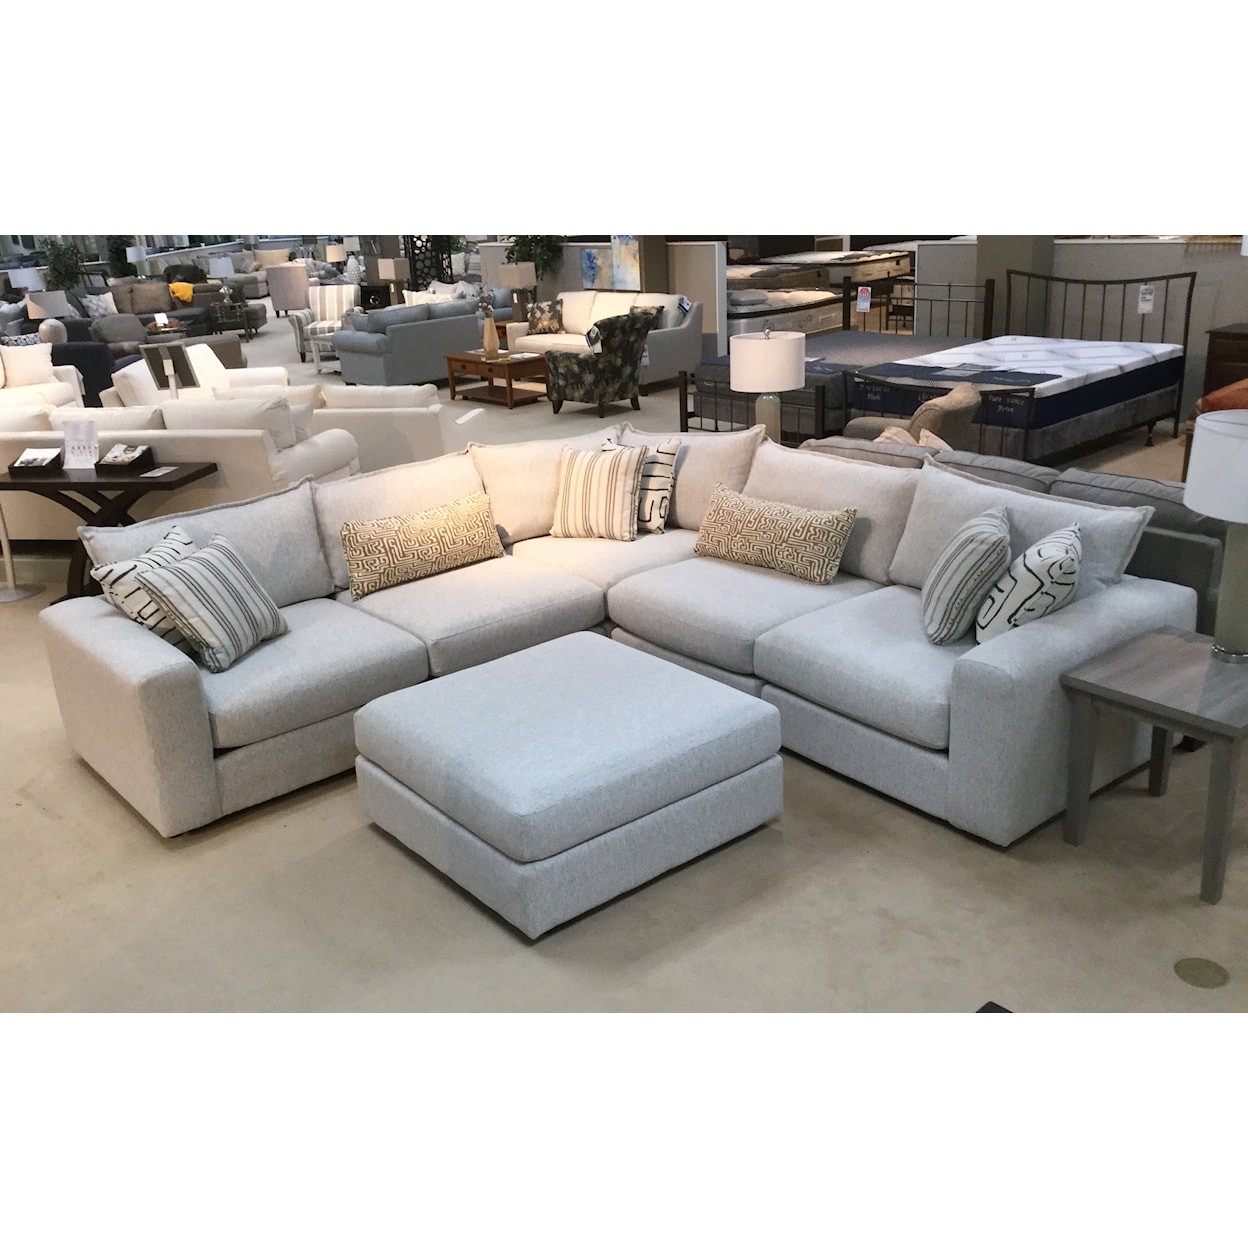 Fusion Furniture 7000 DURANGO PEWTER Sectional Sofas